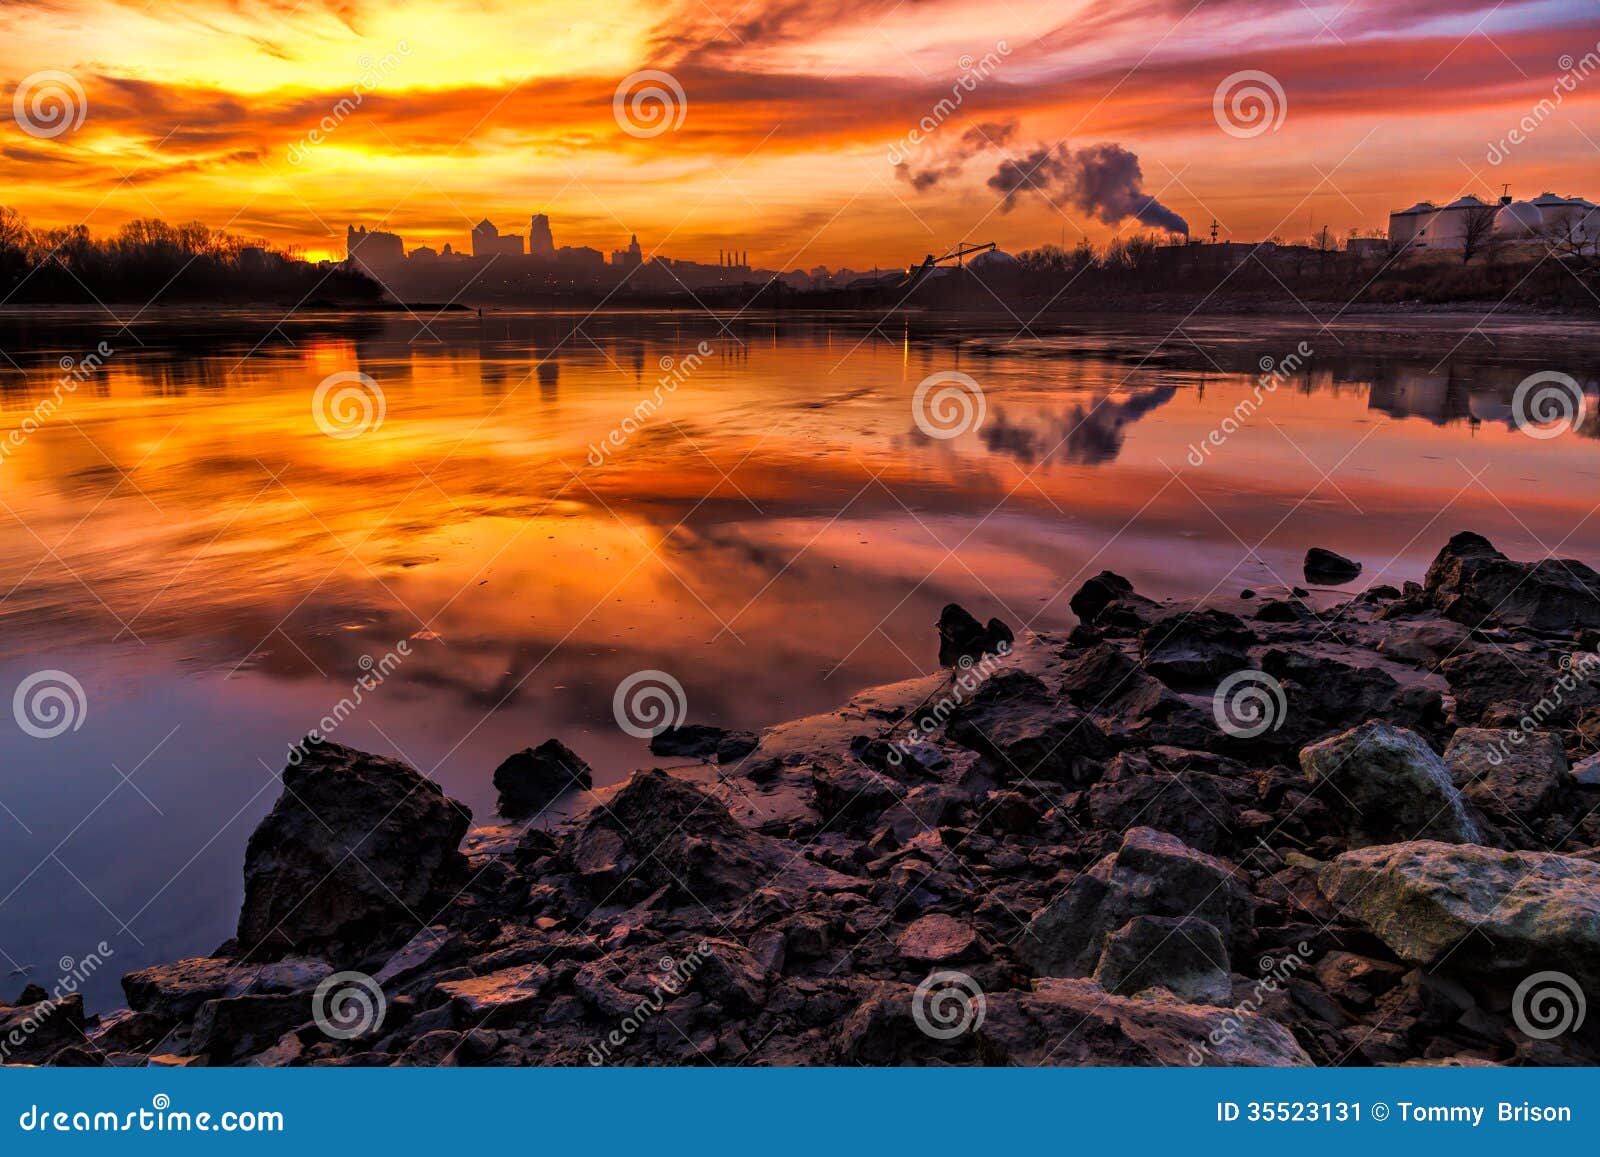 kansas city at sunrise